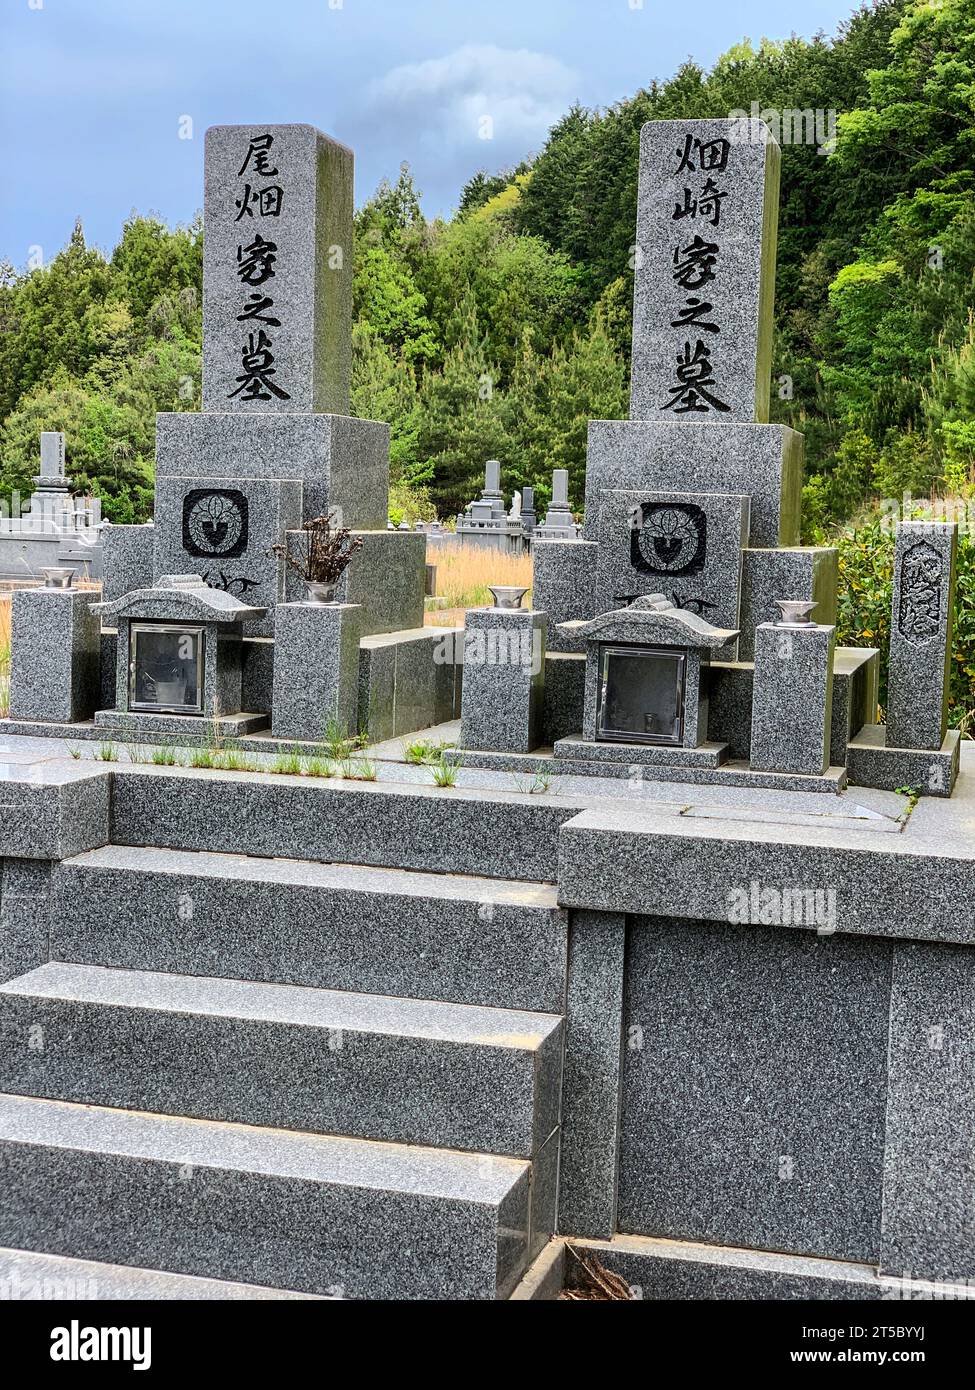 Giappone, Kyushu. Grave Marker lungo il tragitto per il tempio buddista Choan-ji. Penisola di Kunisaki, Prefettura di Oita. Foto Stock